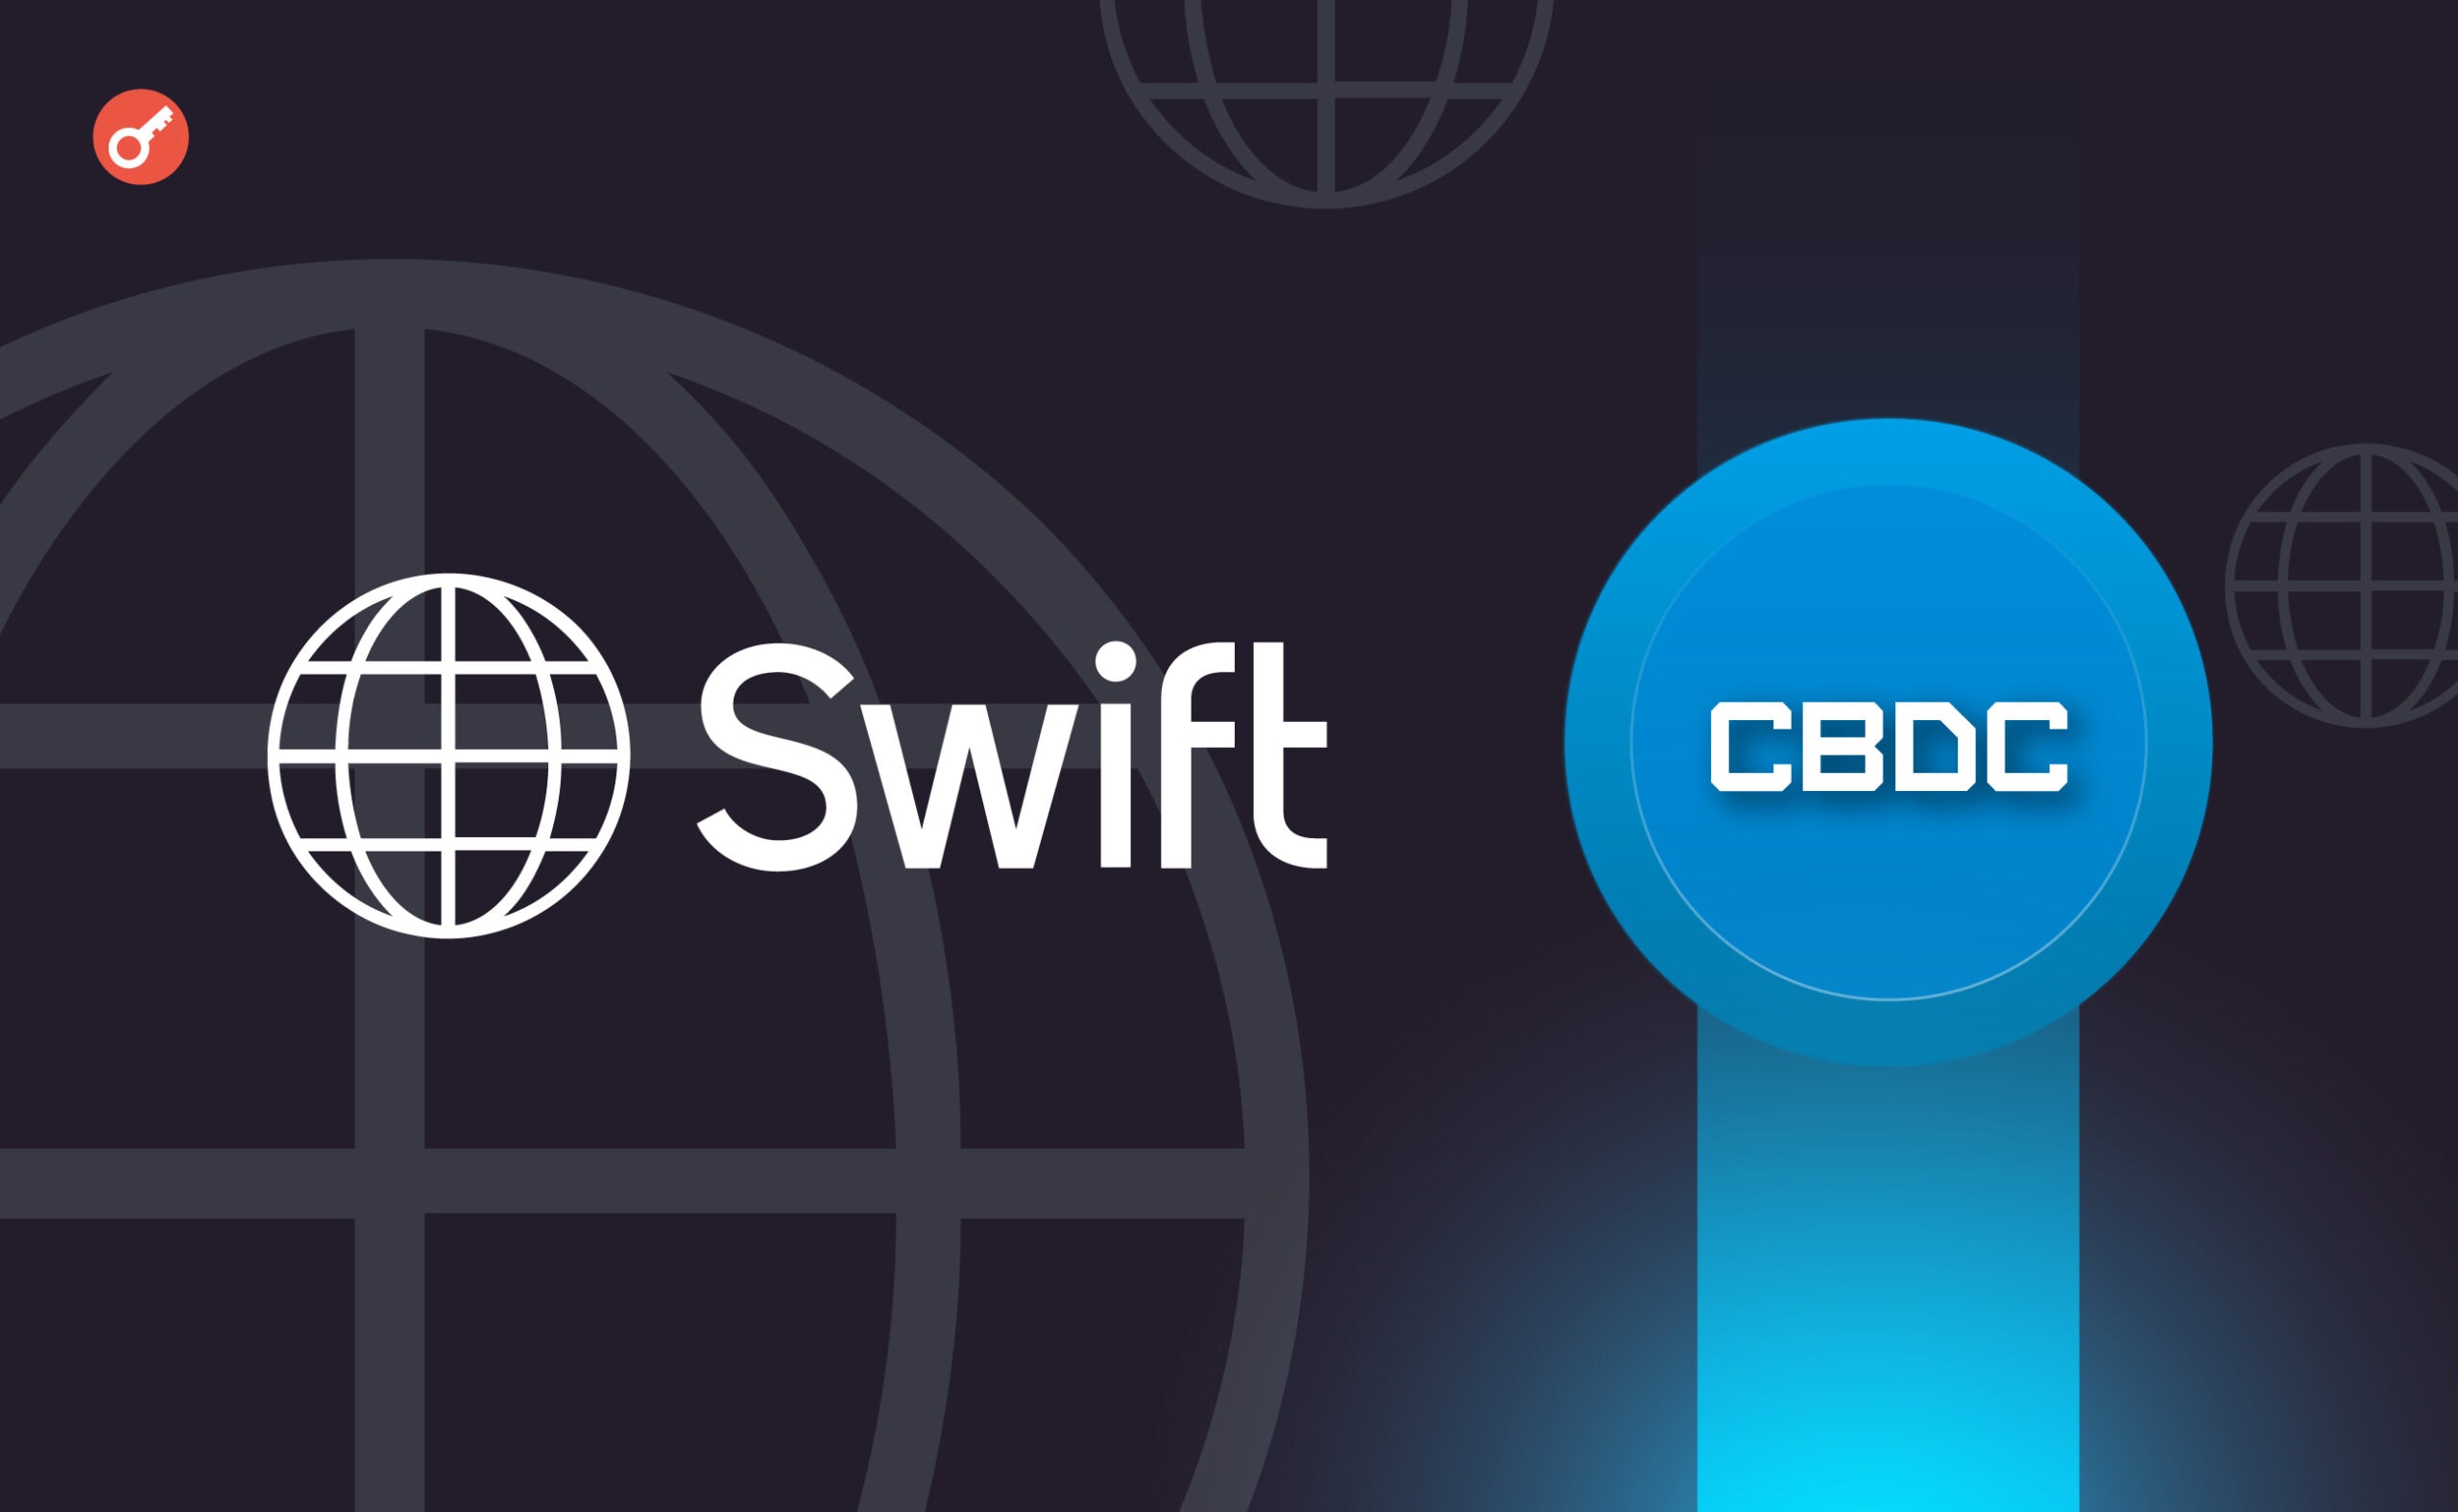 Swift запустив бета-версію платформи для взаємодії CBDC. Головний колаж новини.